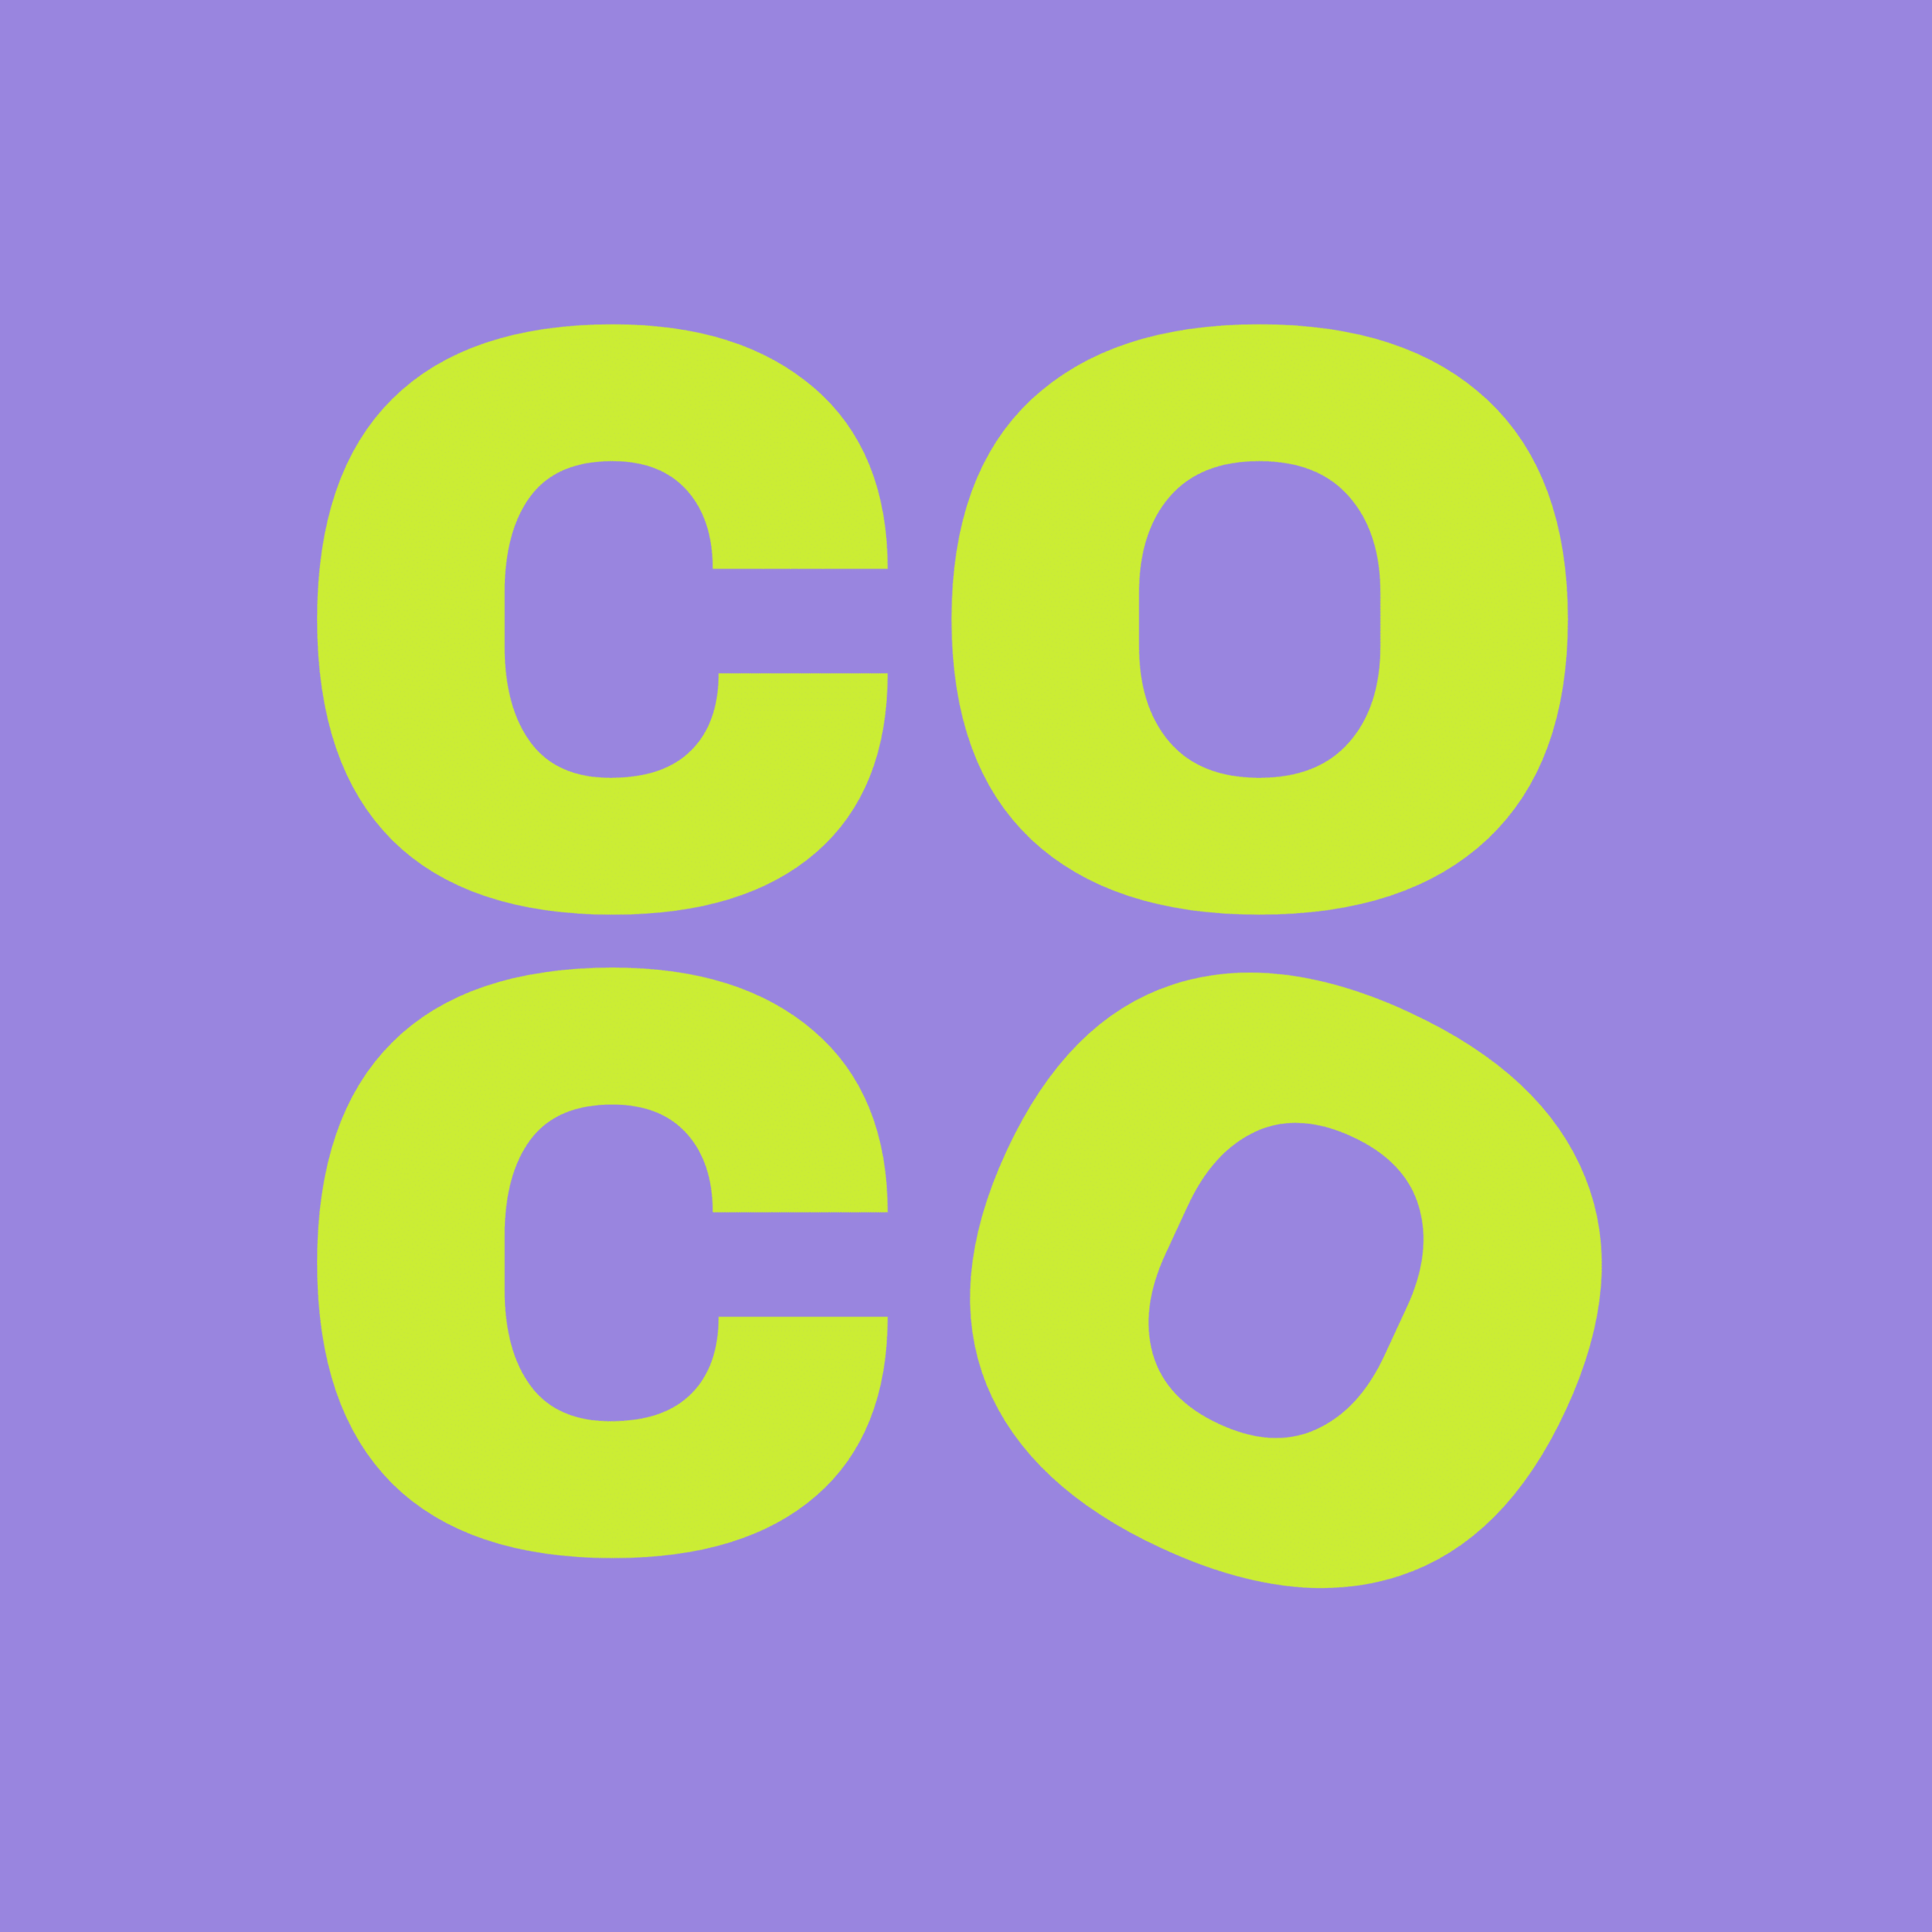 COCO media